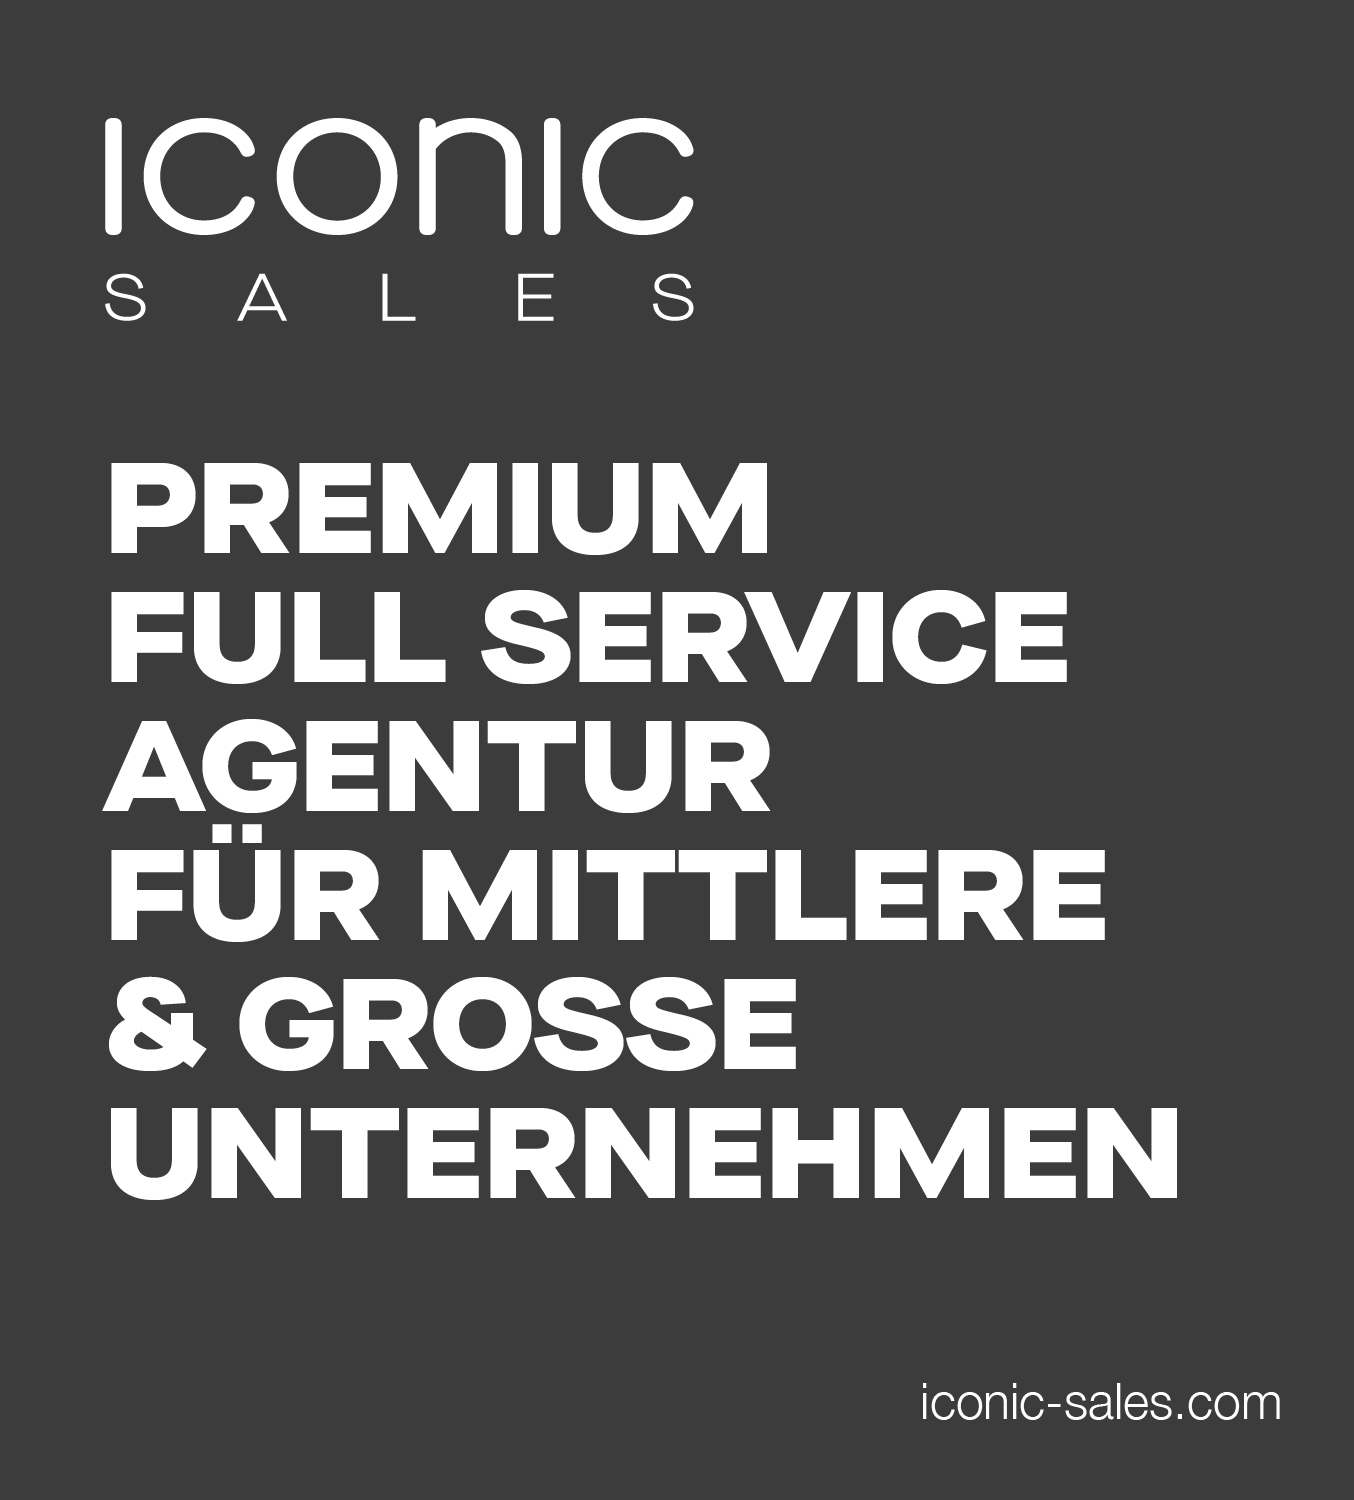 ICONIC Sales Premium Full Service Agentur für mittlere & große Unternehmen